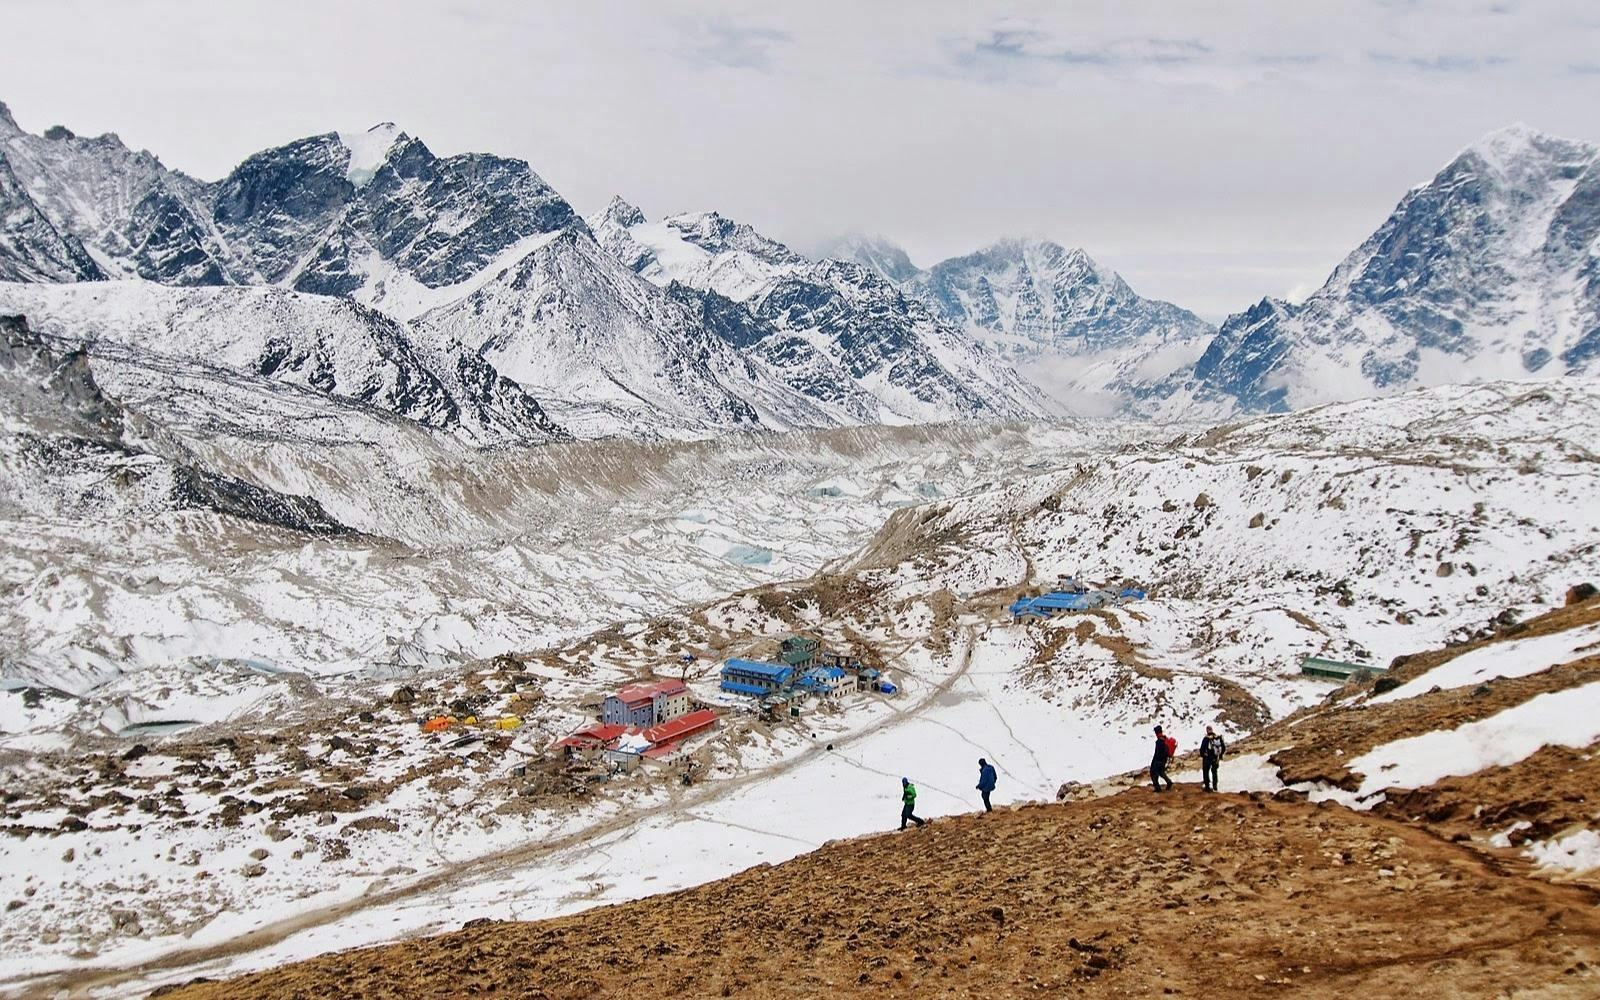 Khumbu Valley - Kalapatthar